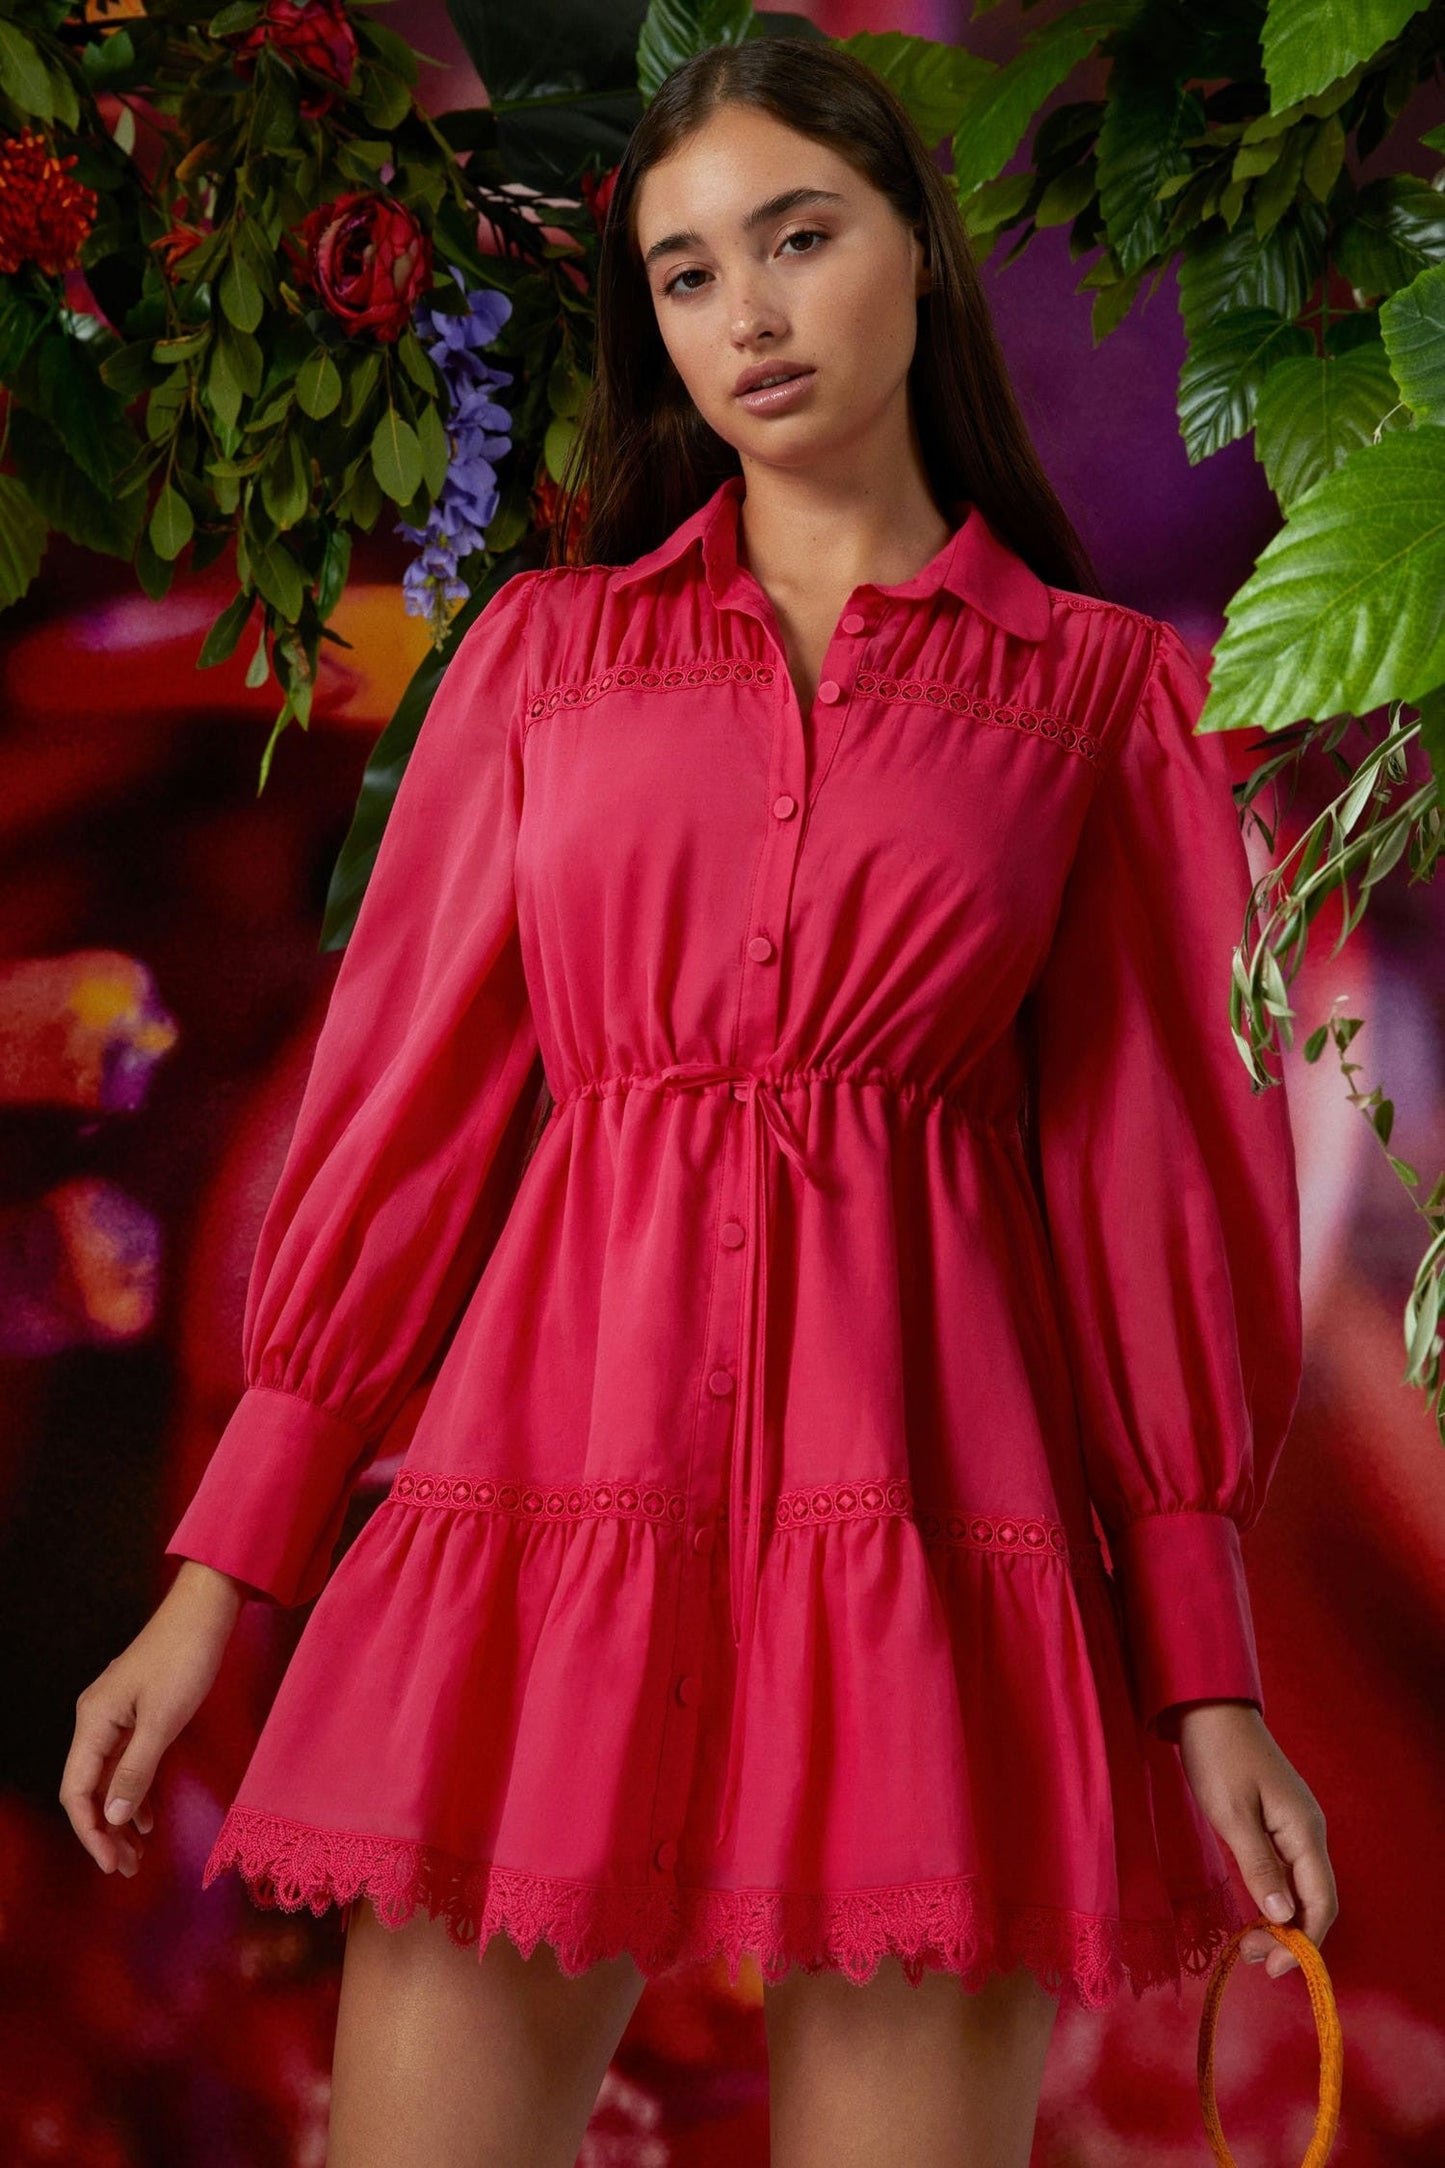 Charo Ruiz Begonia Short Dress - Premium Short dress from Marina St Barth - Just $619.00! Shop now at Marina St Barth